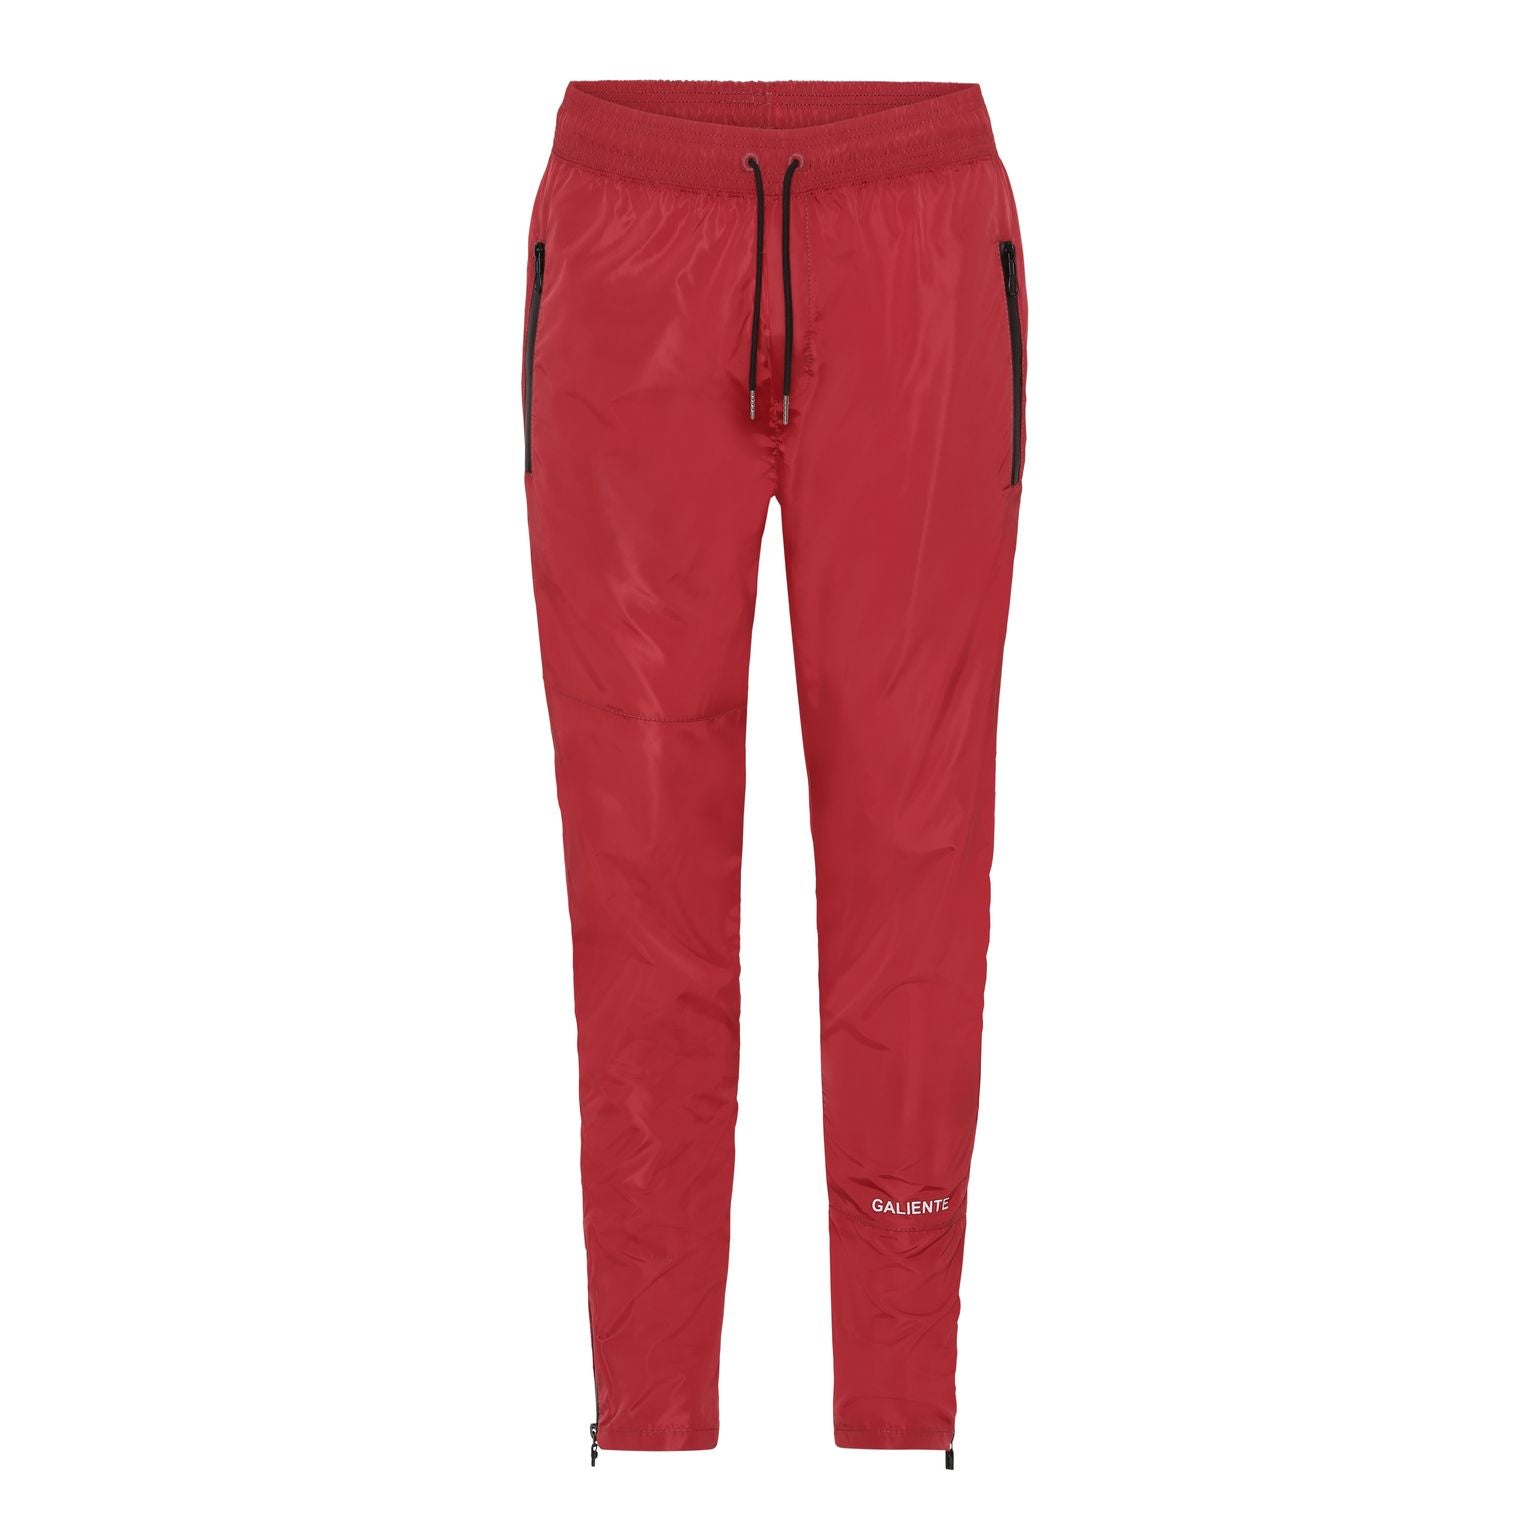 Waterproof red trousers